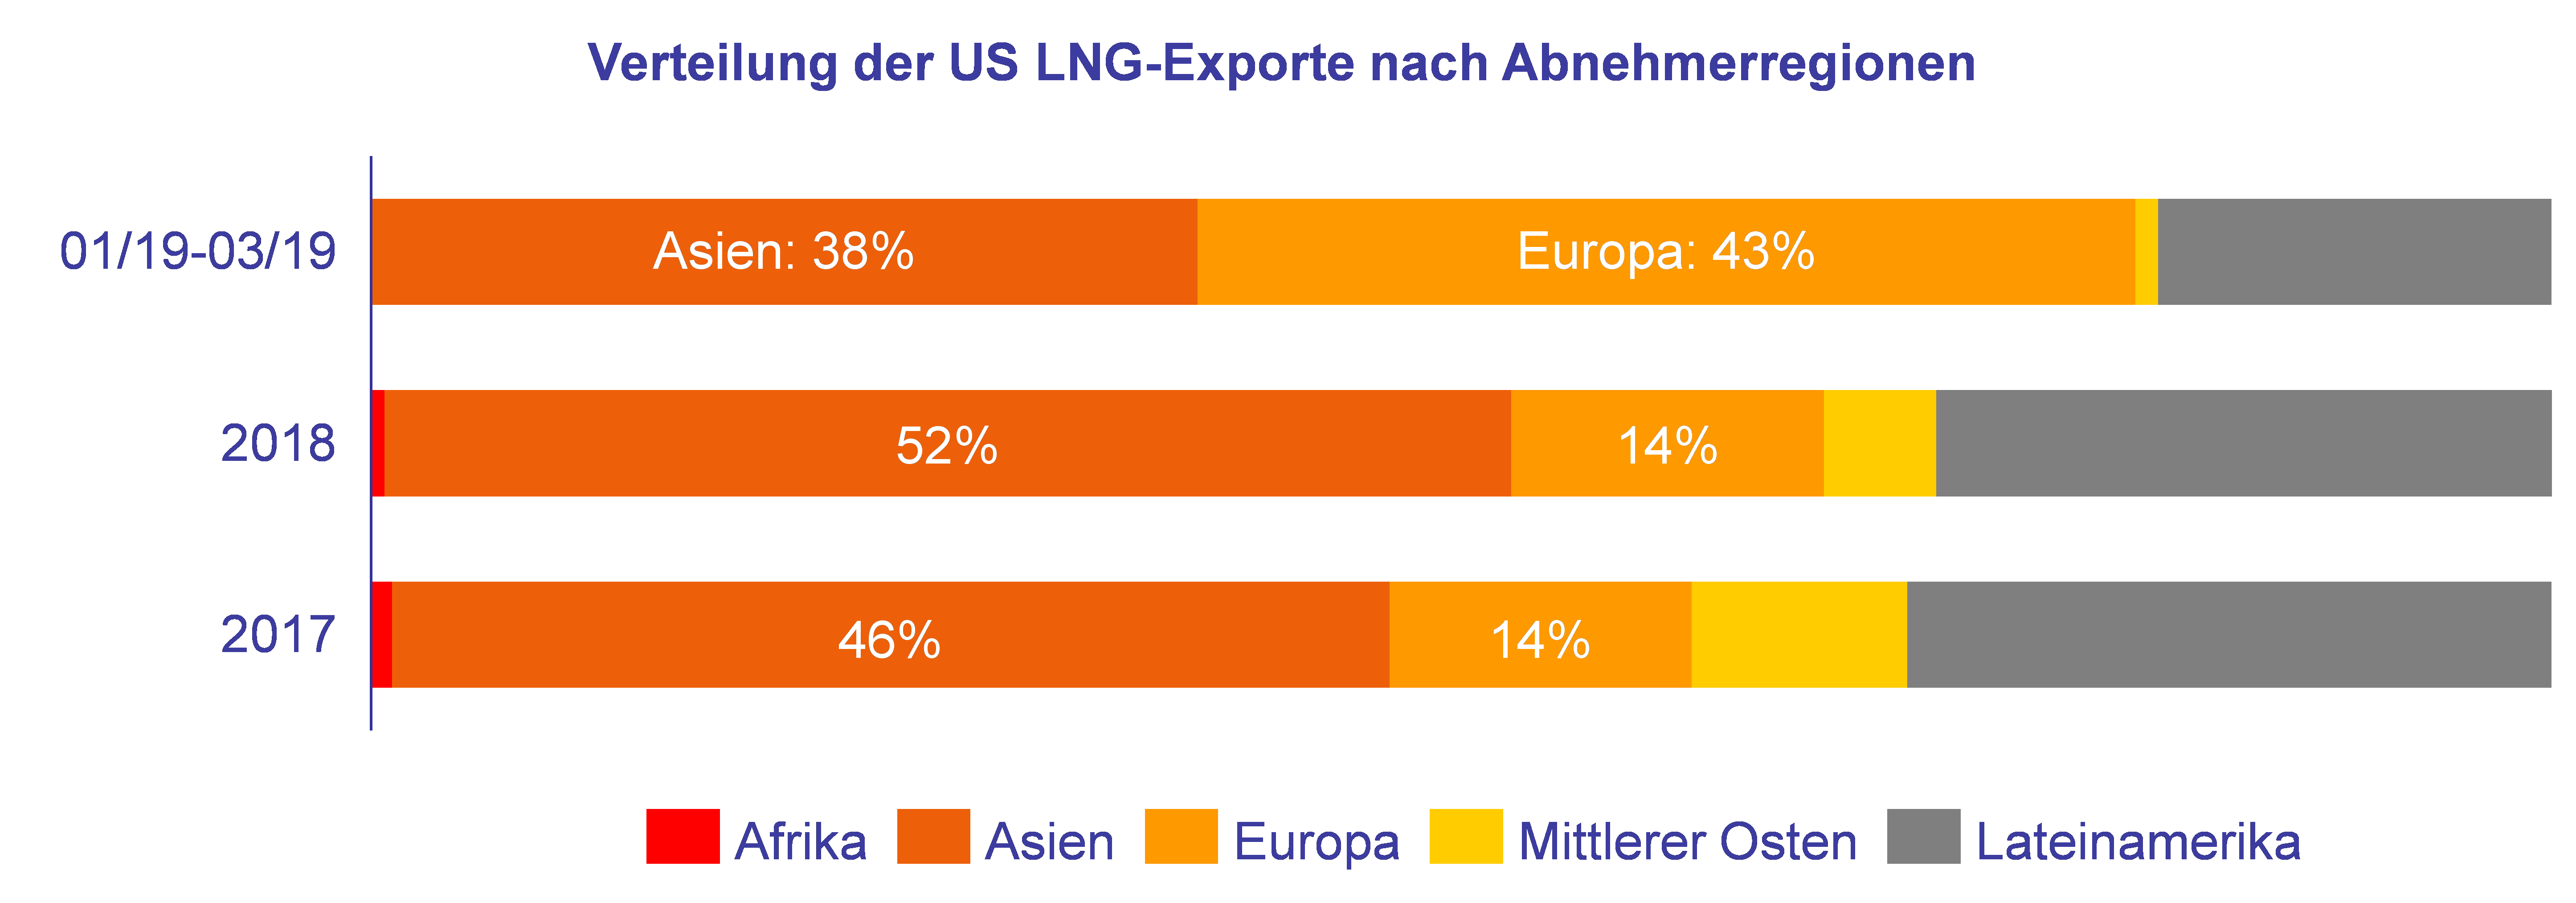 Verteilung der US LNG-Exporte nach Abnehmerregionen